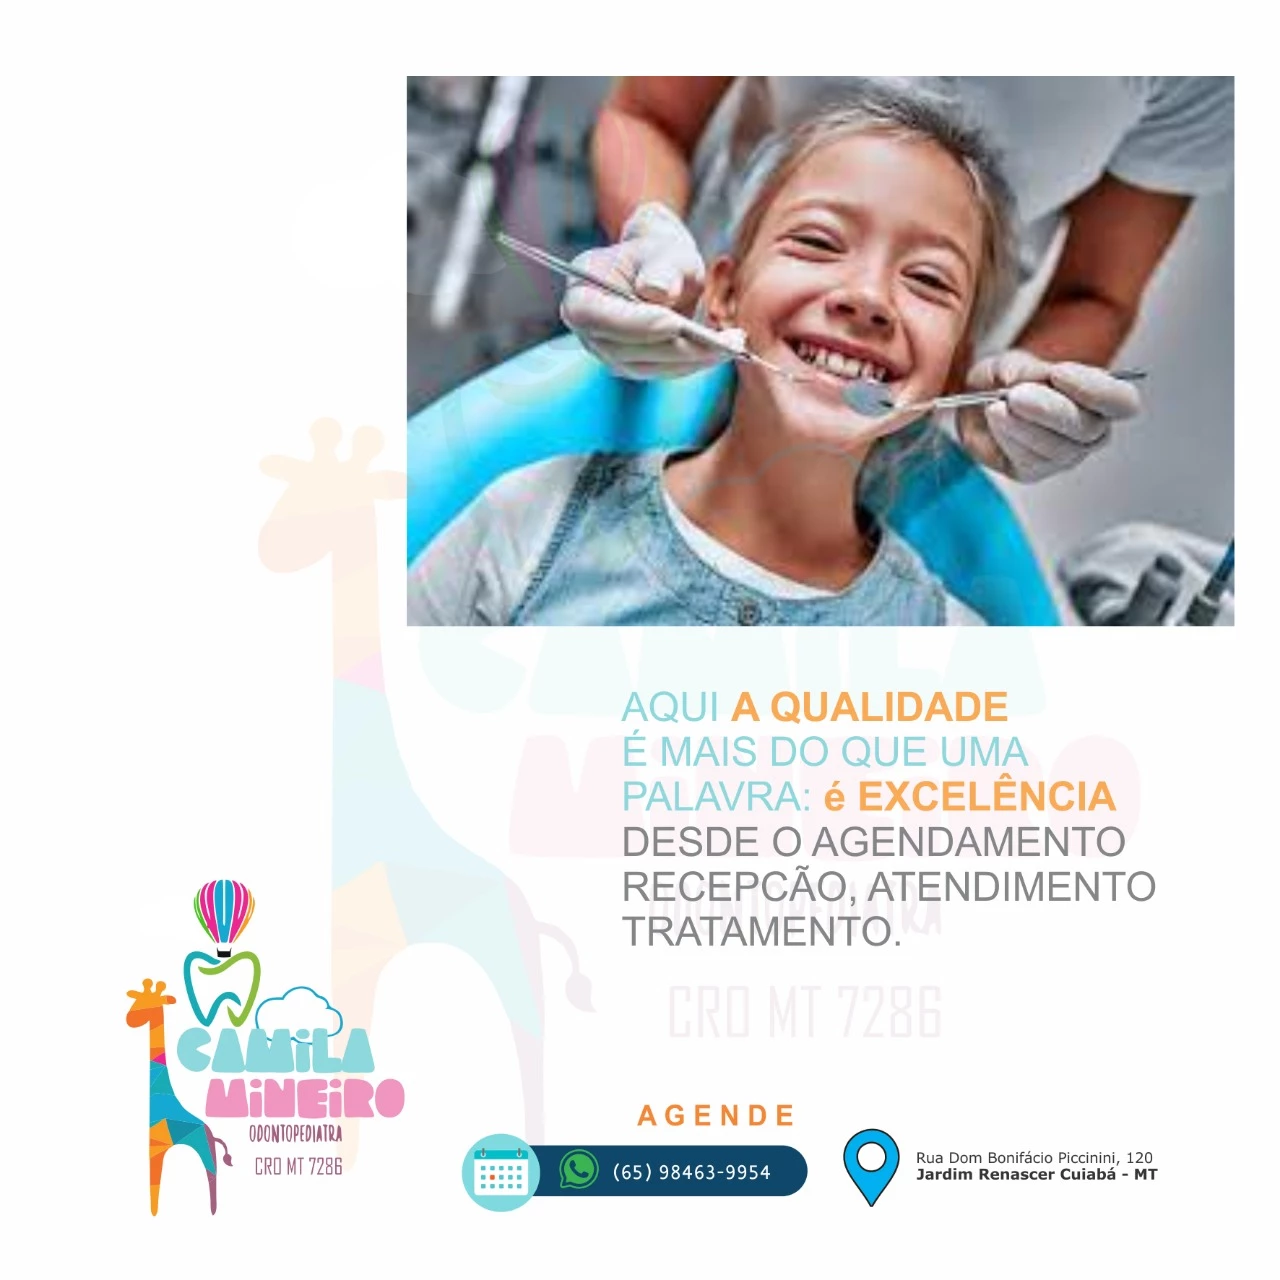 
Propaganda Ododontopediatria Dentista de Criança sobre qualidade no atendimento e tratamento



